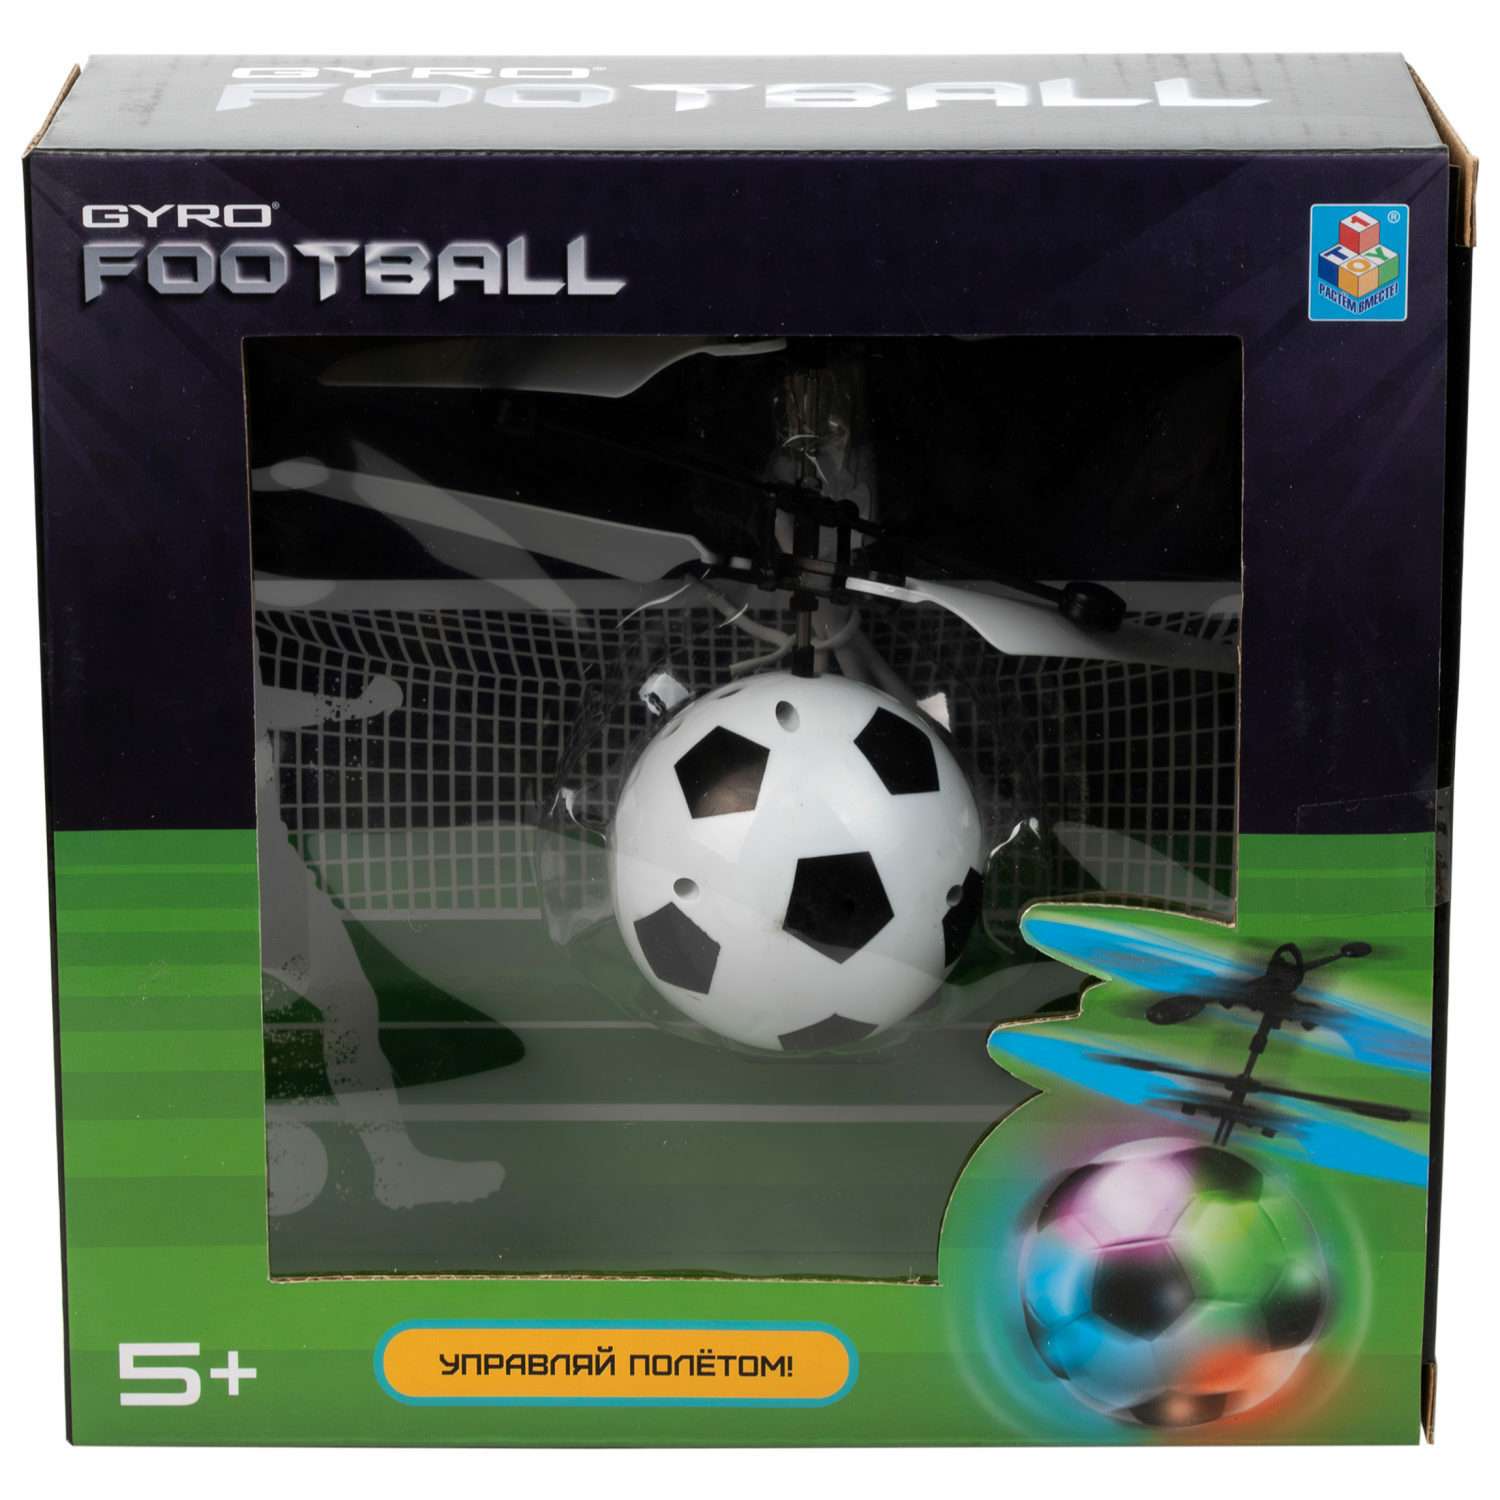 Интерактивная игрушка 1TOY Gyro-FOOTBALL шар на сенсорном управлении со световыми эффектами - фото 5